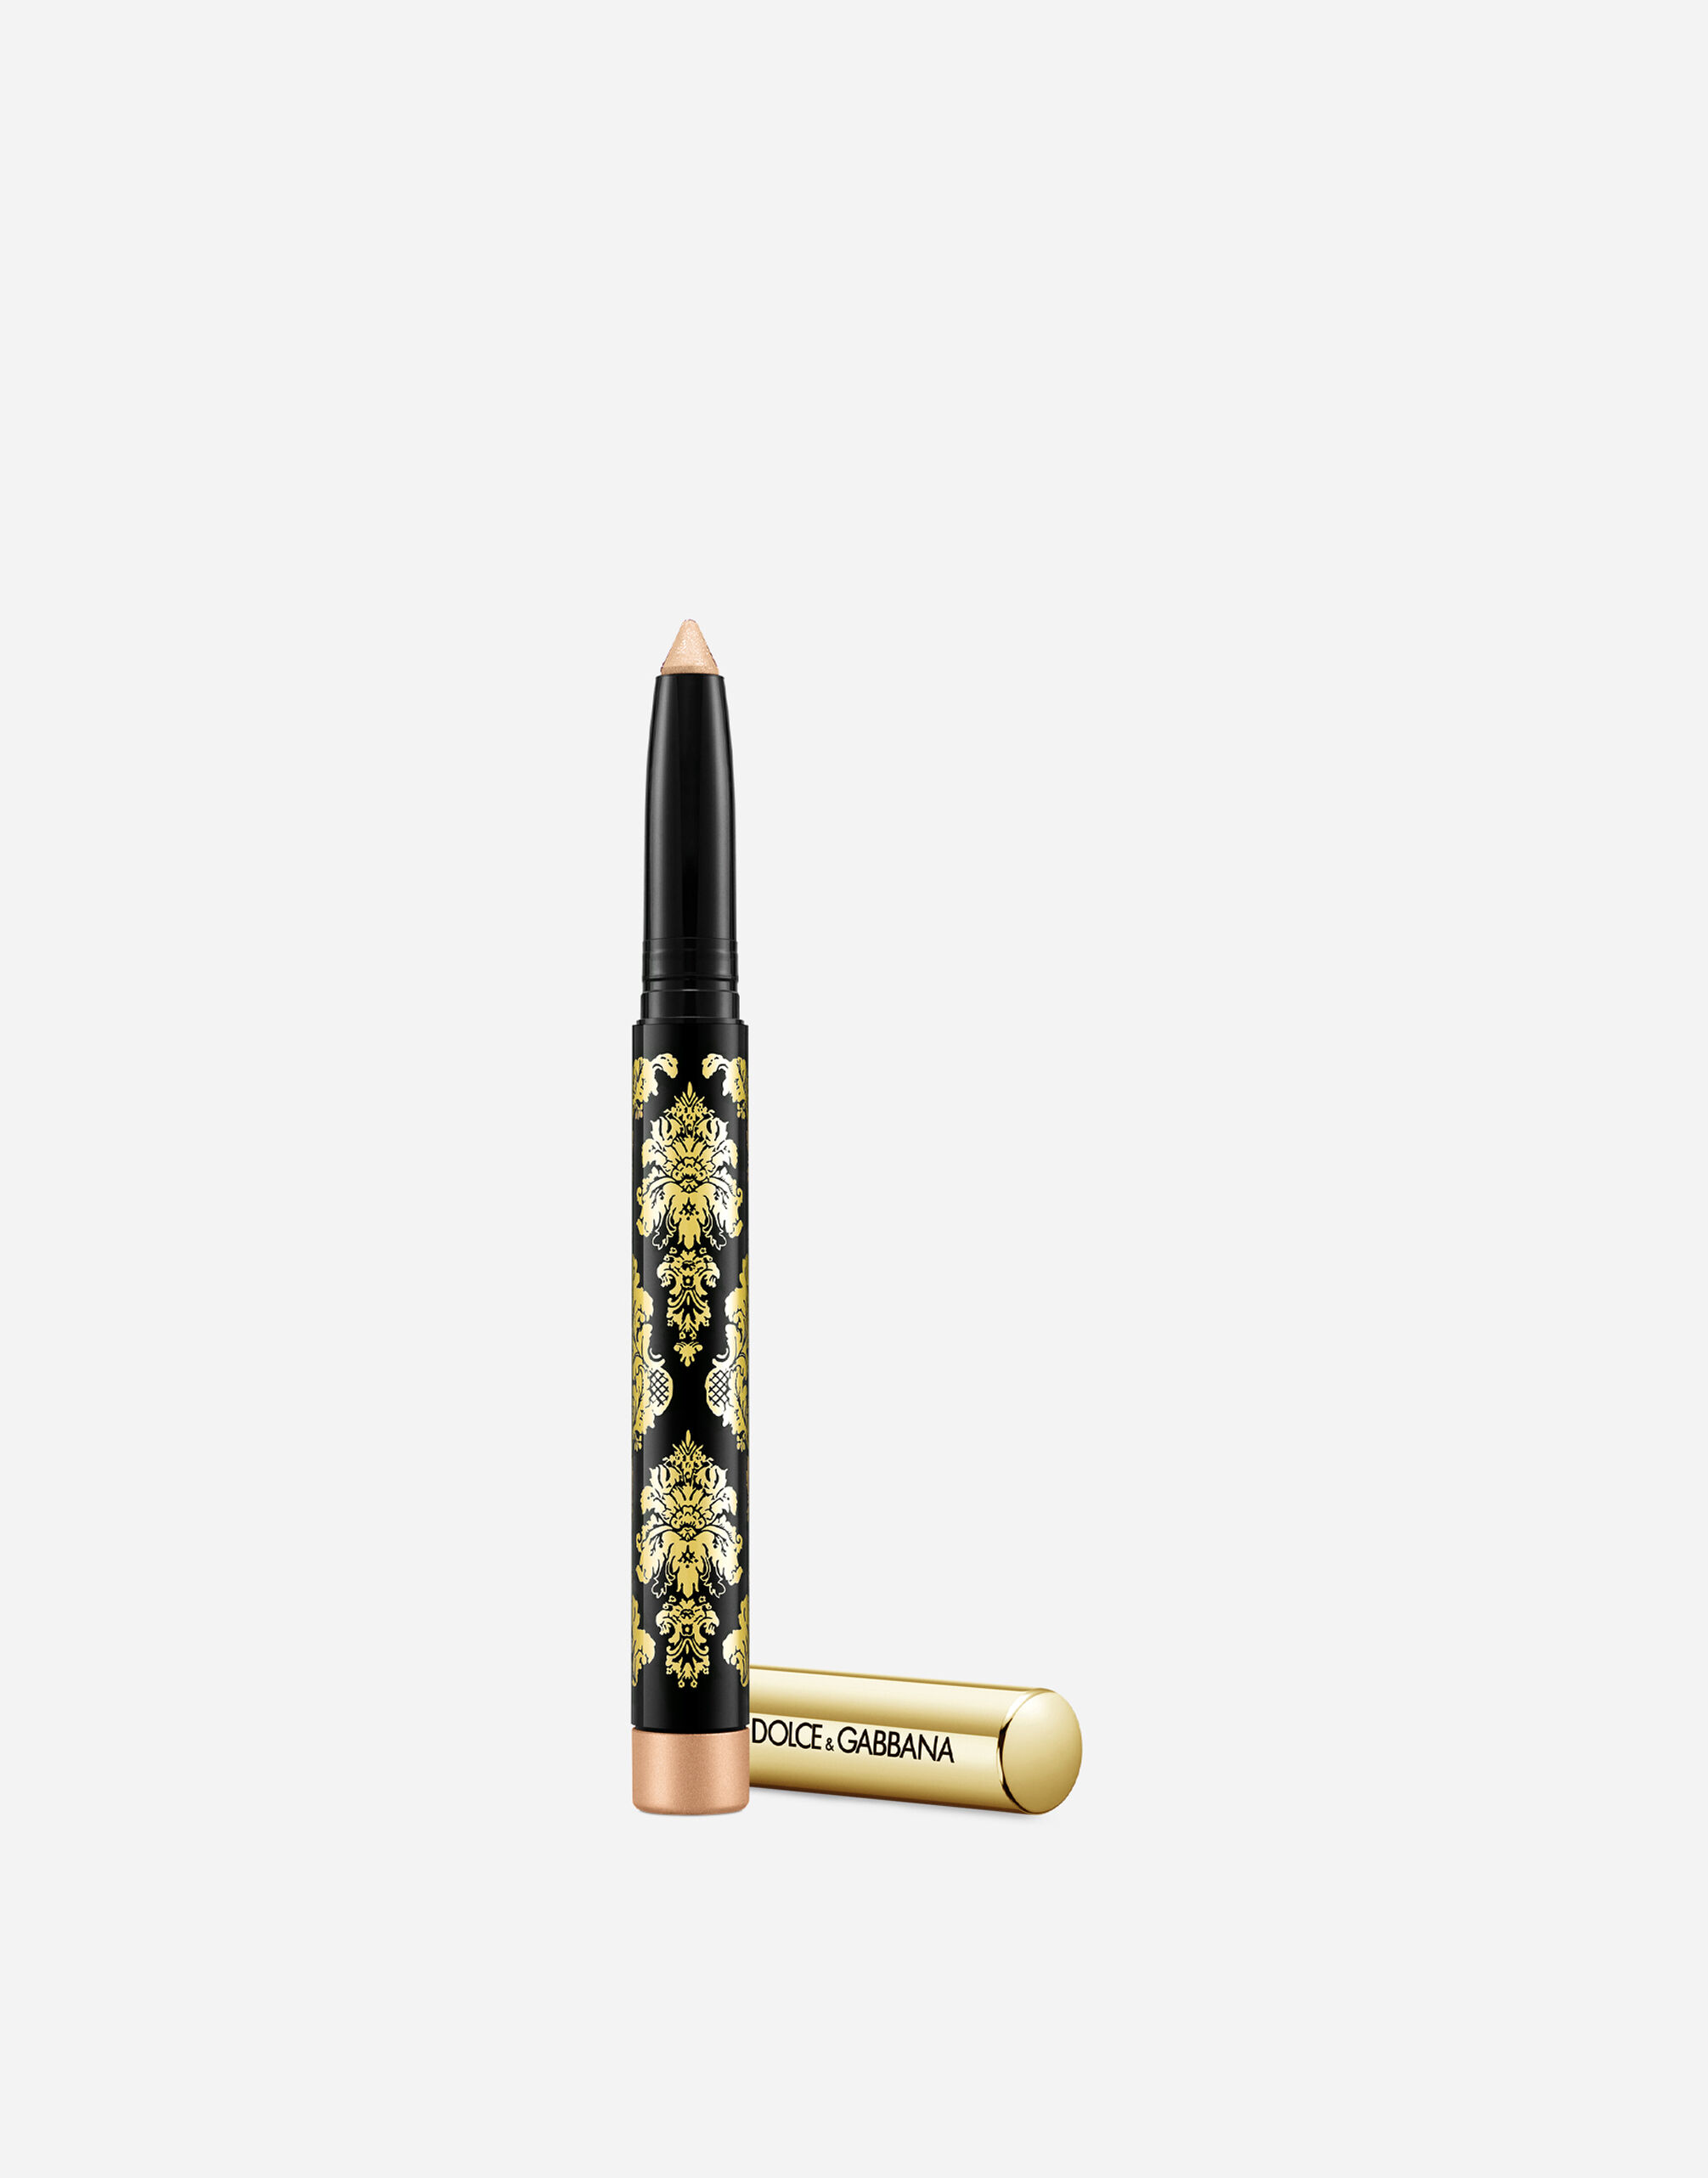 Тени-карандаш для глаз Dolce & Gabbana Intenseyes кремовые, №7 Shimmer, 1,4 г карандаш кайал для глаз dolce